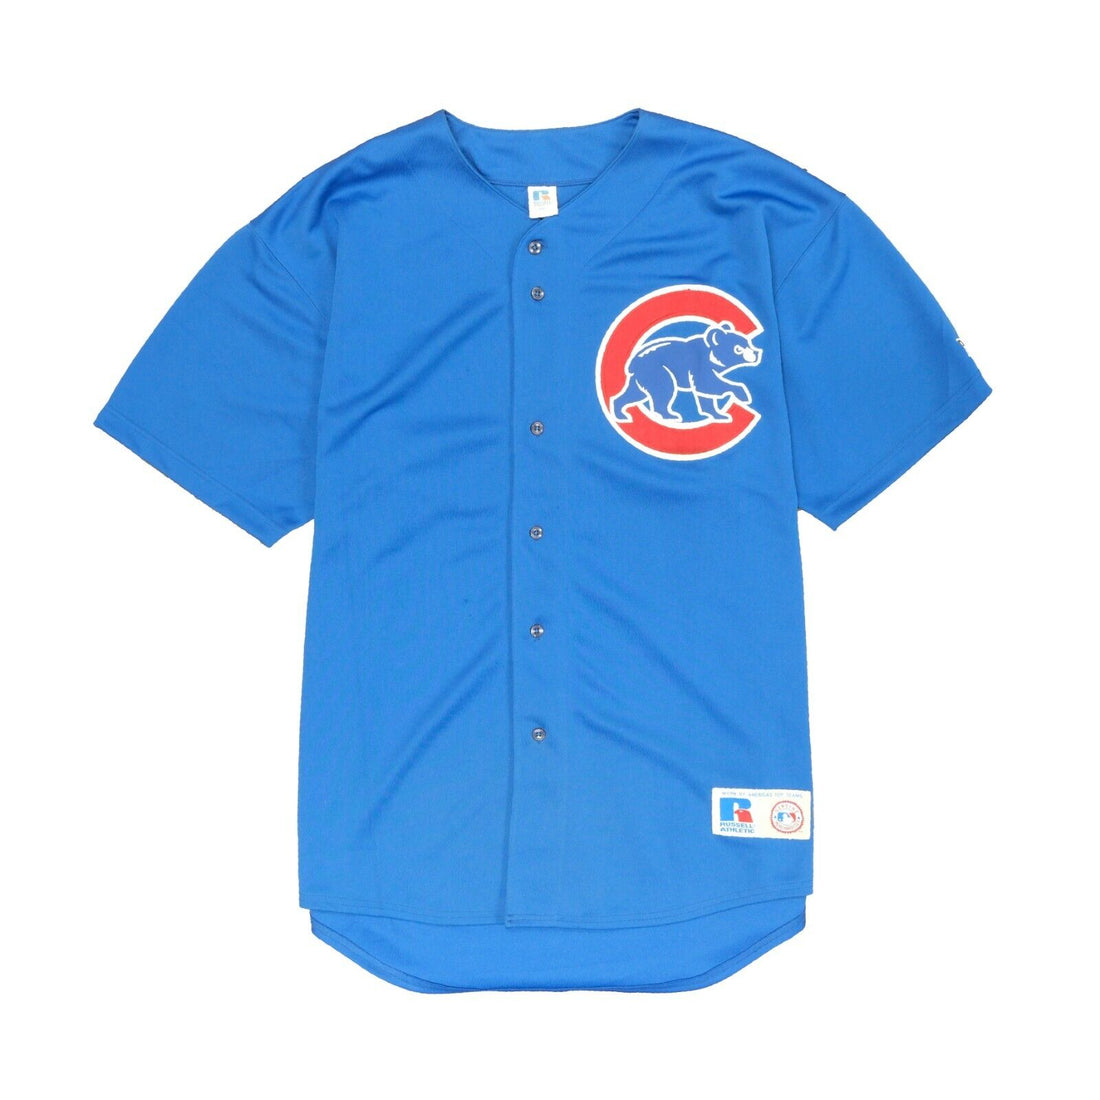 Vintage Chicago Cubs Matt Clement Russell Baseball Jersey Size 2XL Blue 90s MLB